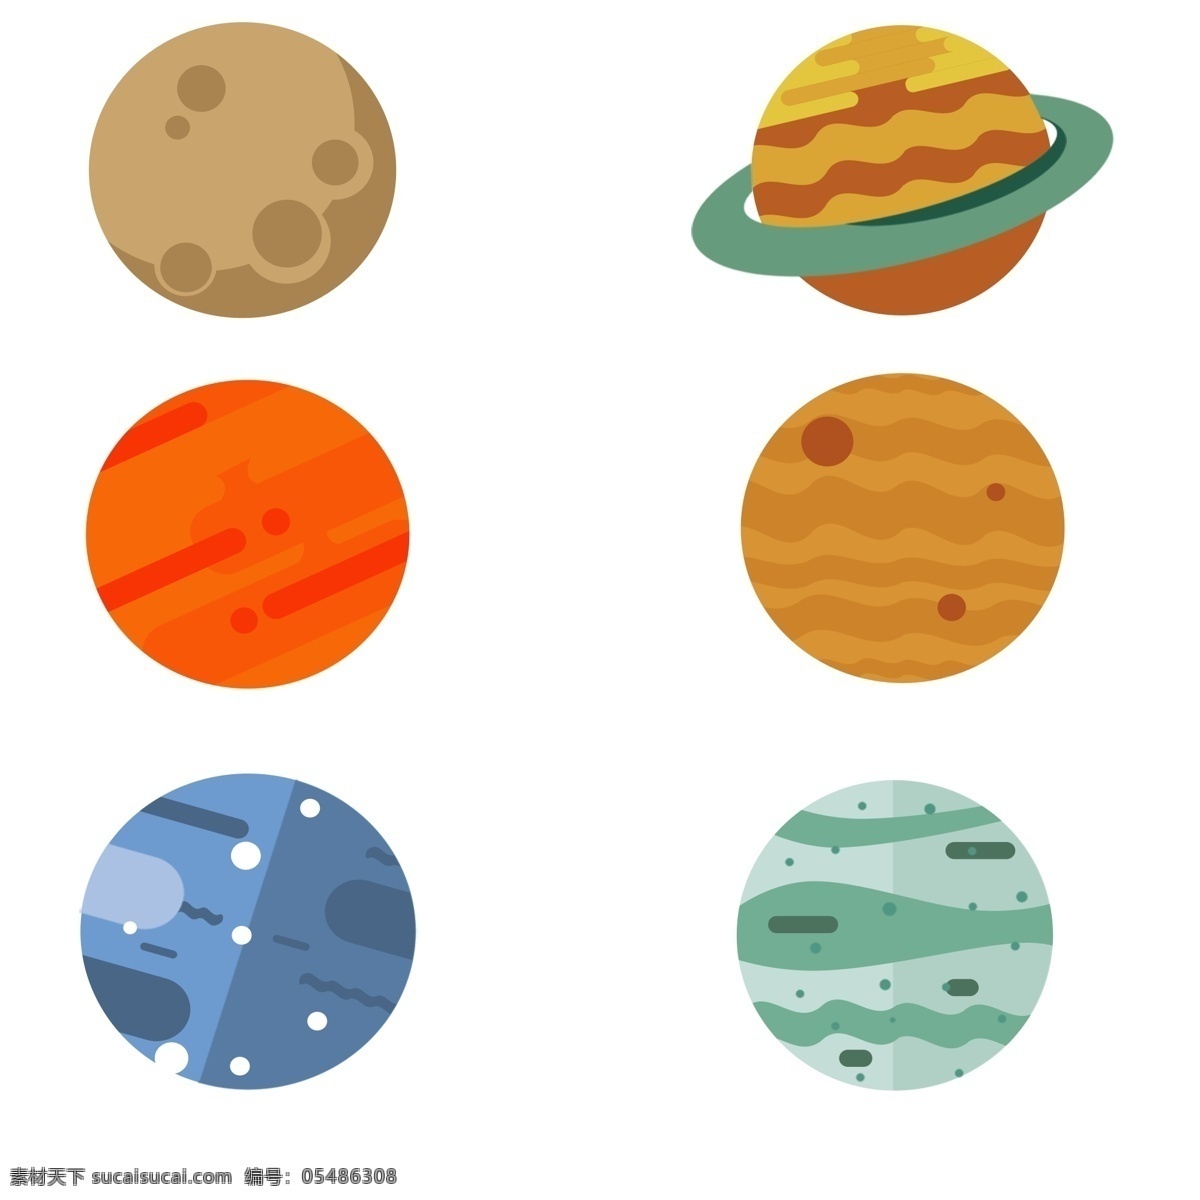 星球 可爱 卡通 太阳系 月球 火星 手绘